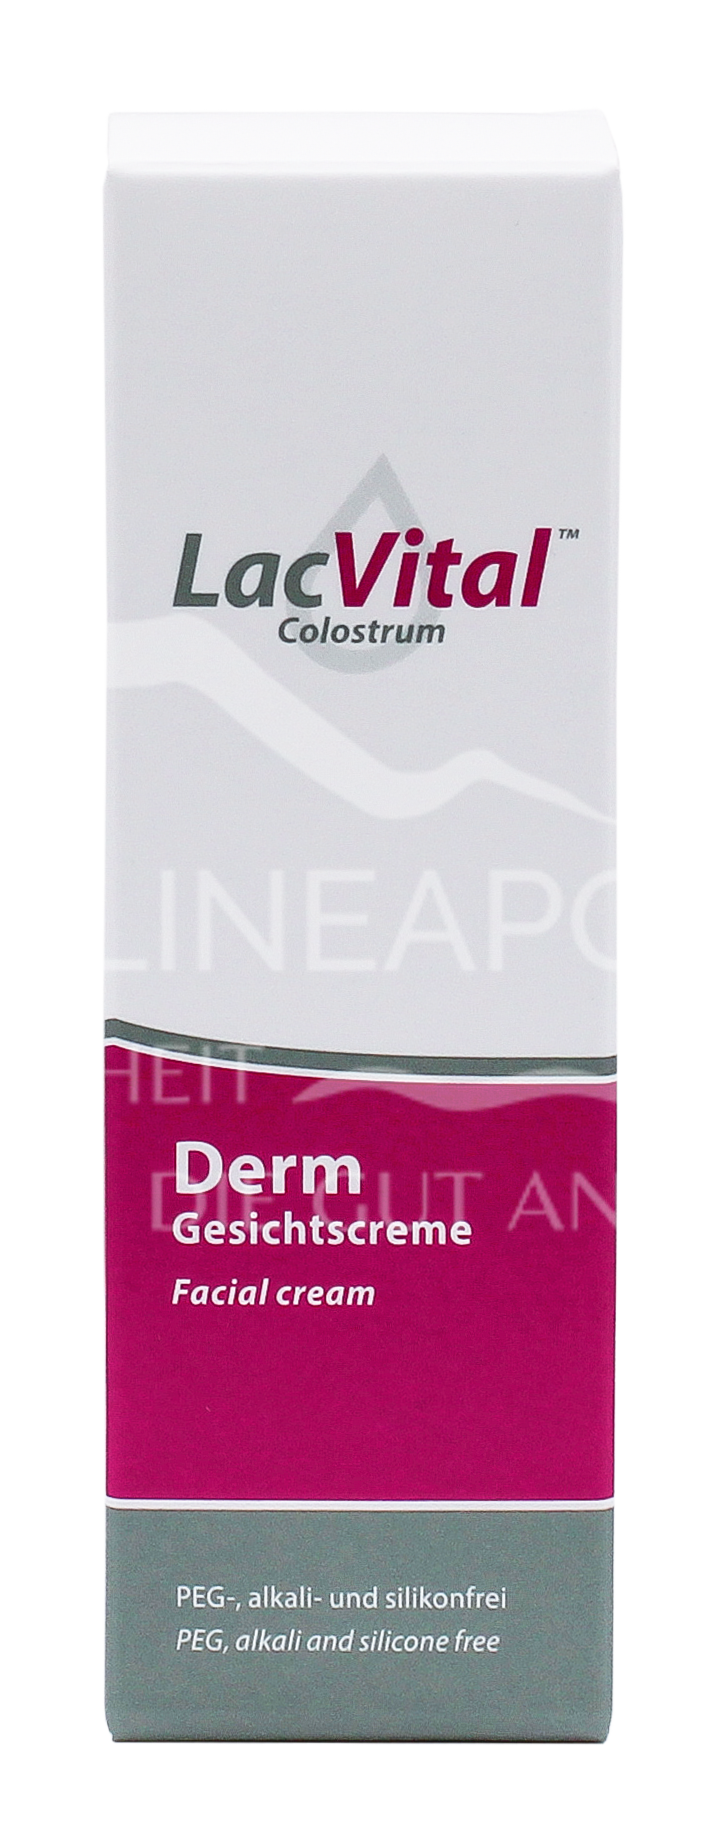 LacVital™ Colostrum Derm Gesichtscreme